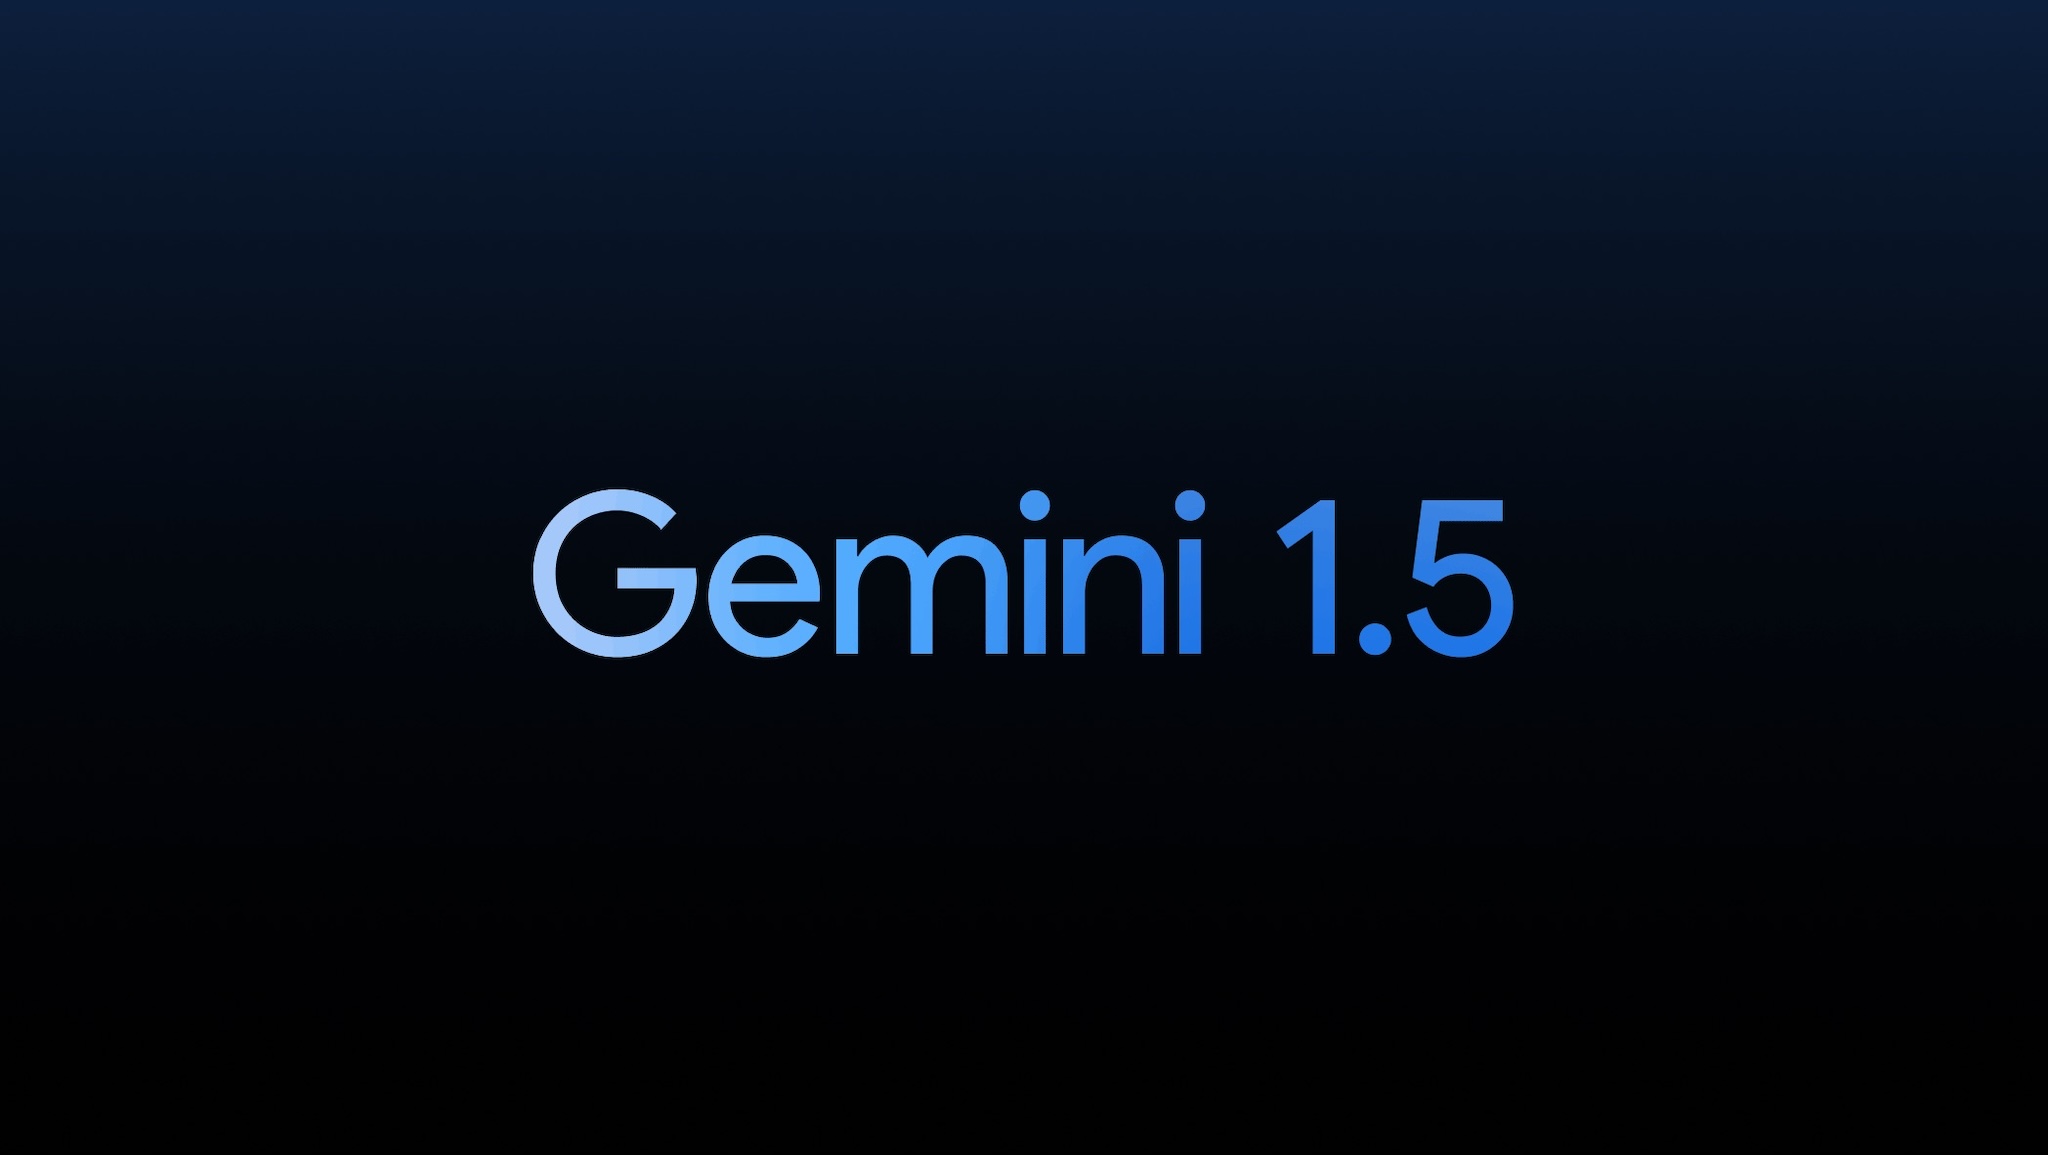 Mô hình ngôn ngữ Gemini 1.5 mà Google vừa ra mắt có gì hay?